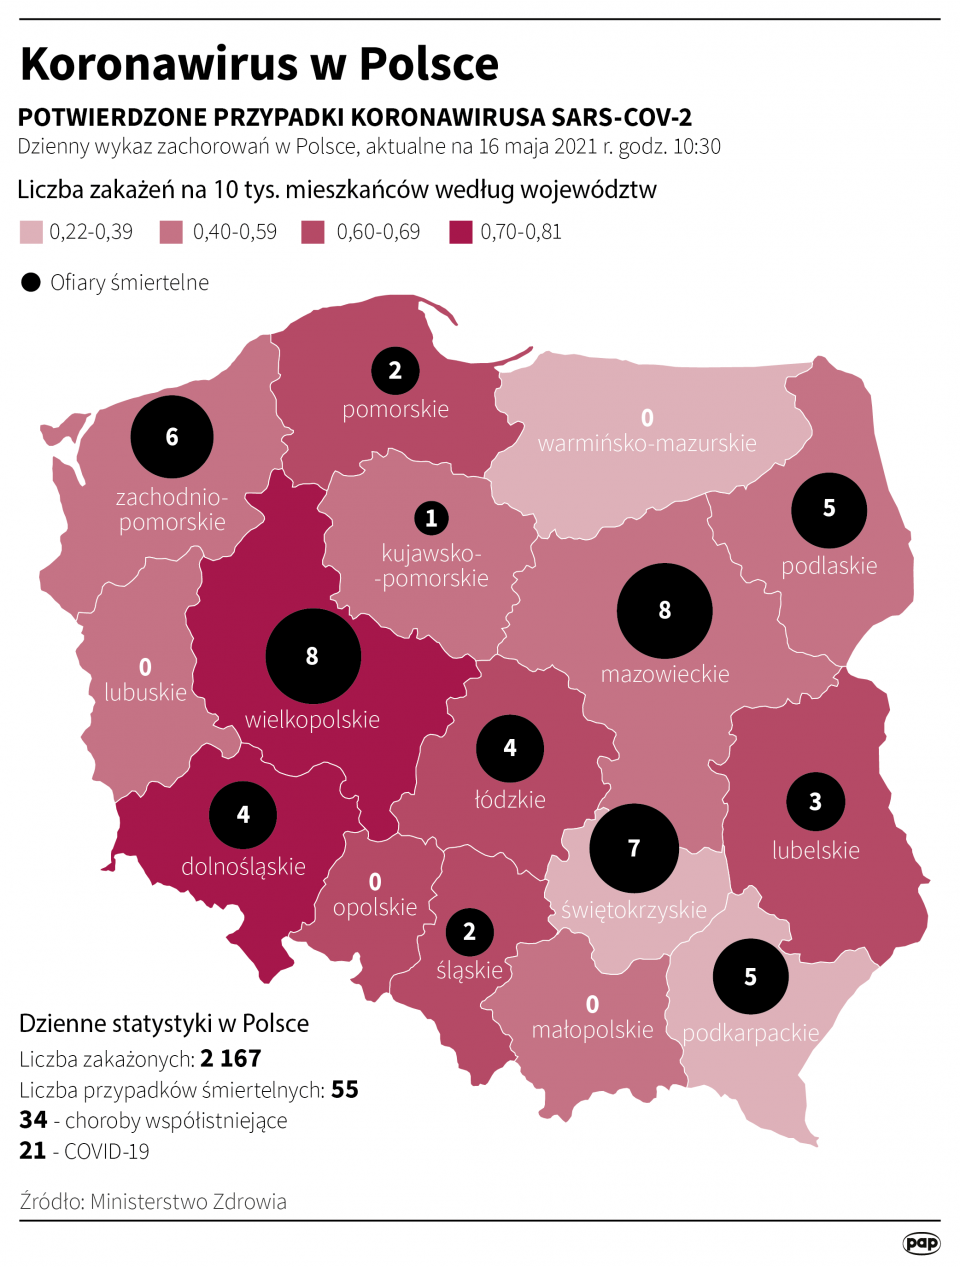 Koronawirus w Polsce stan na 16 maja [autor: Maciej Zieliński, źródło: PAP]